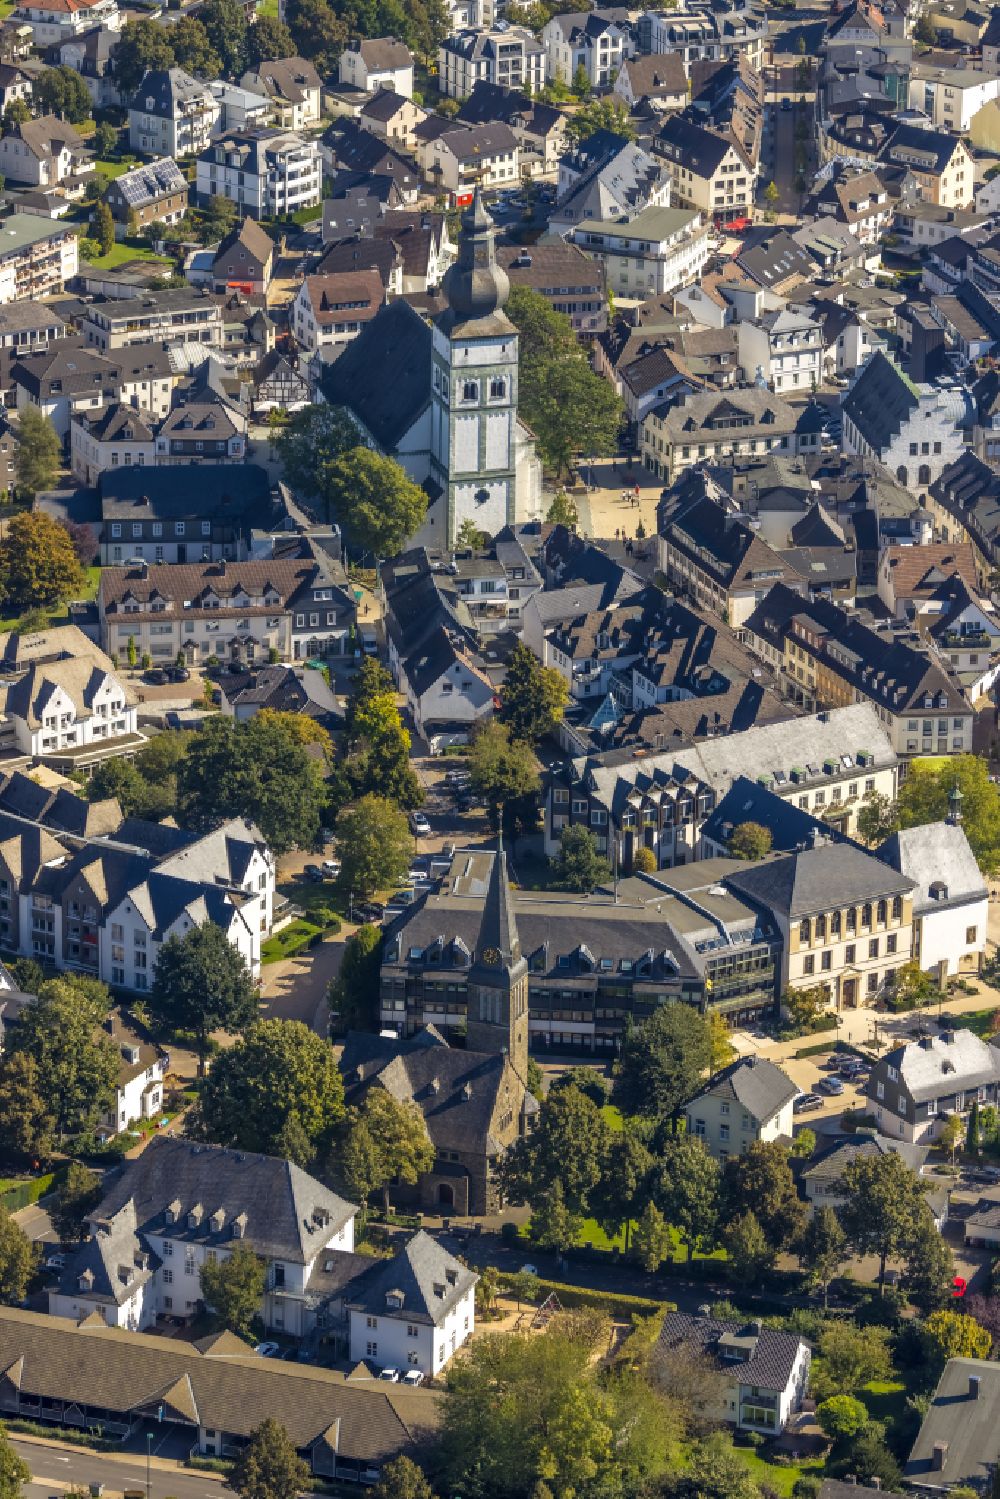 Aerial image Hansestadt Attendorn - Old Town area and city center in Hansestadt Attendorn in the state North Rhine-Westphalia, Germany